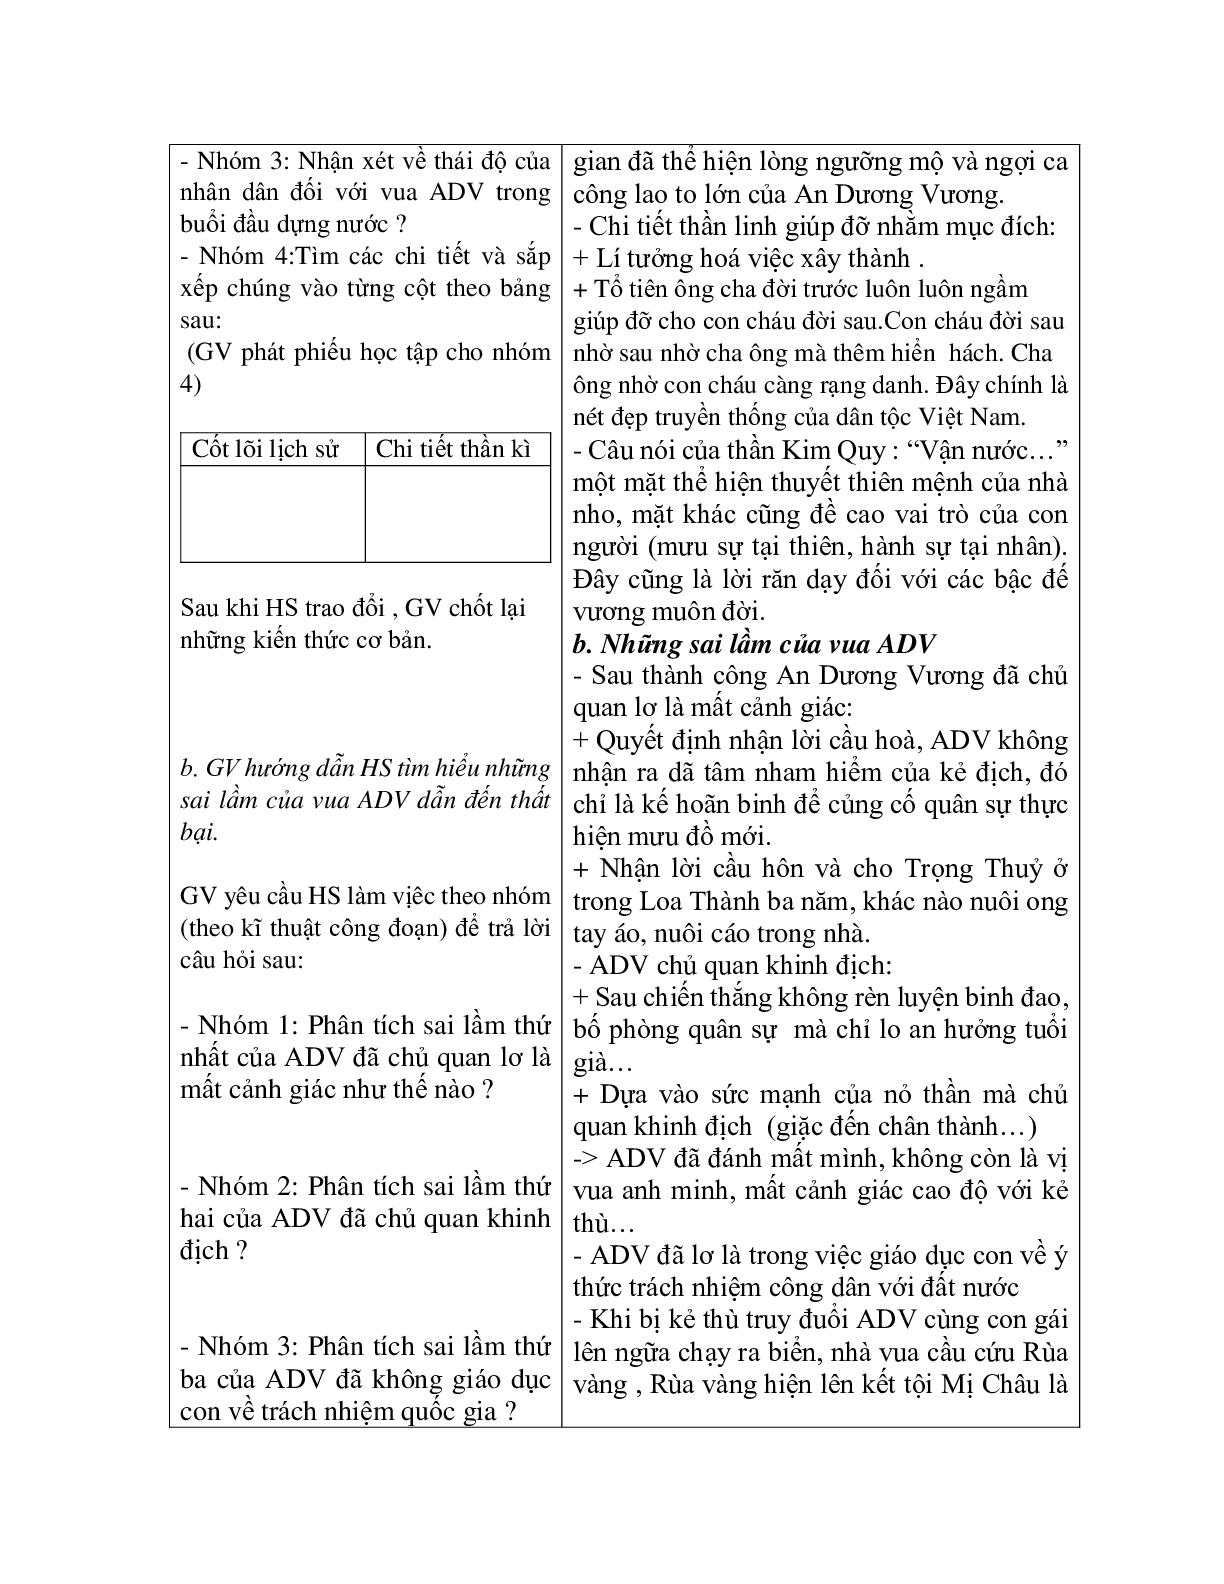 Giáo án ngữ văn lớp 10 Tiết 12, 13: Truyện An Dương Vương và Mị Chậu Trọng Thủy (trang 4)